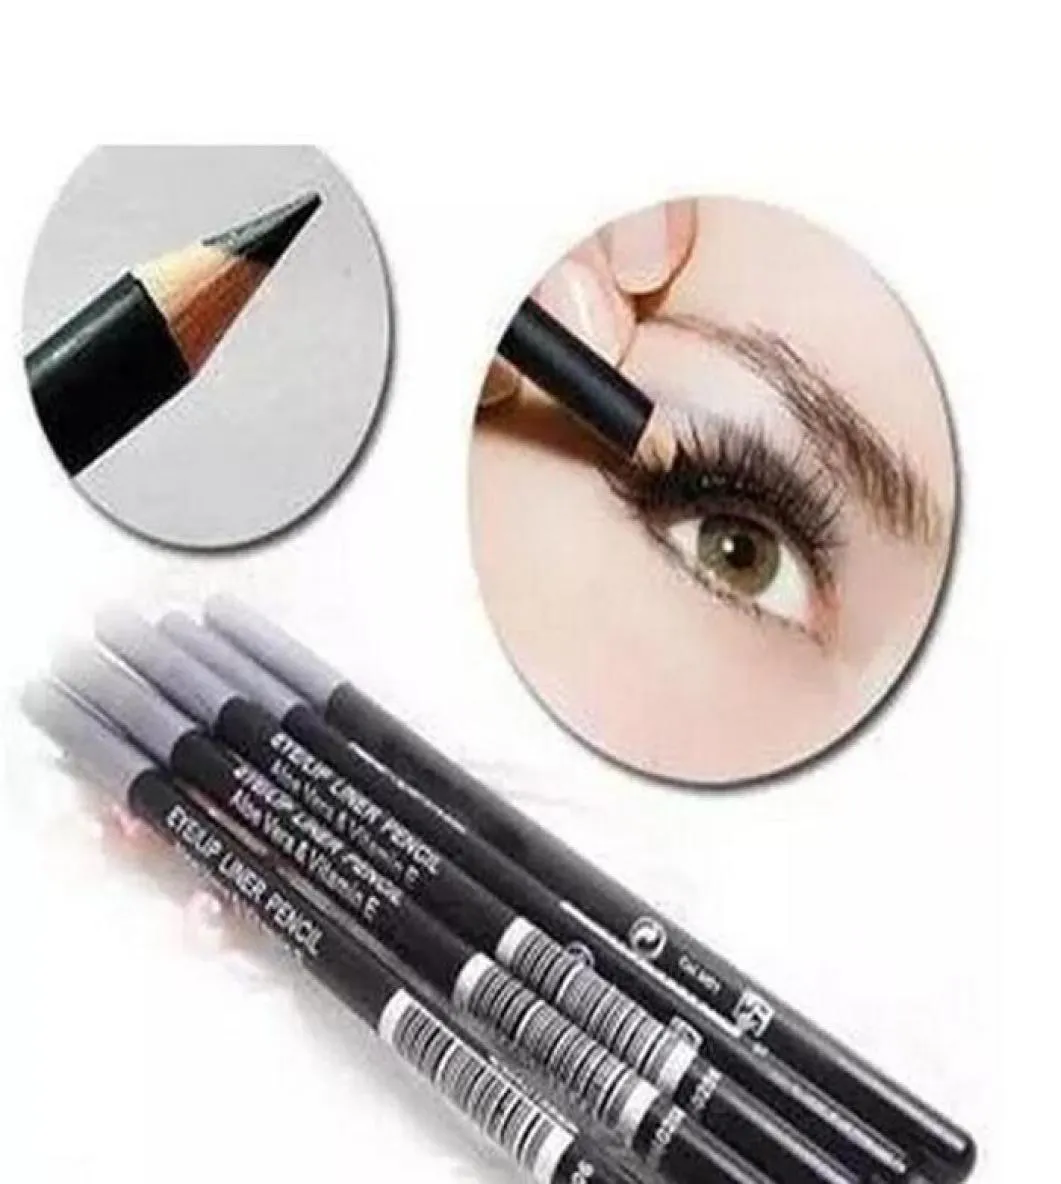 Hochwertige neueste Marken -Makeup Eyeliner Bleistift Schwarz und Braun Mix Colors 12pcs1628045